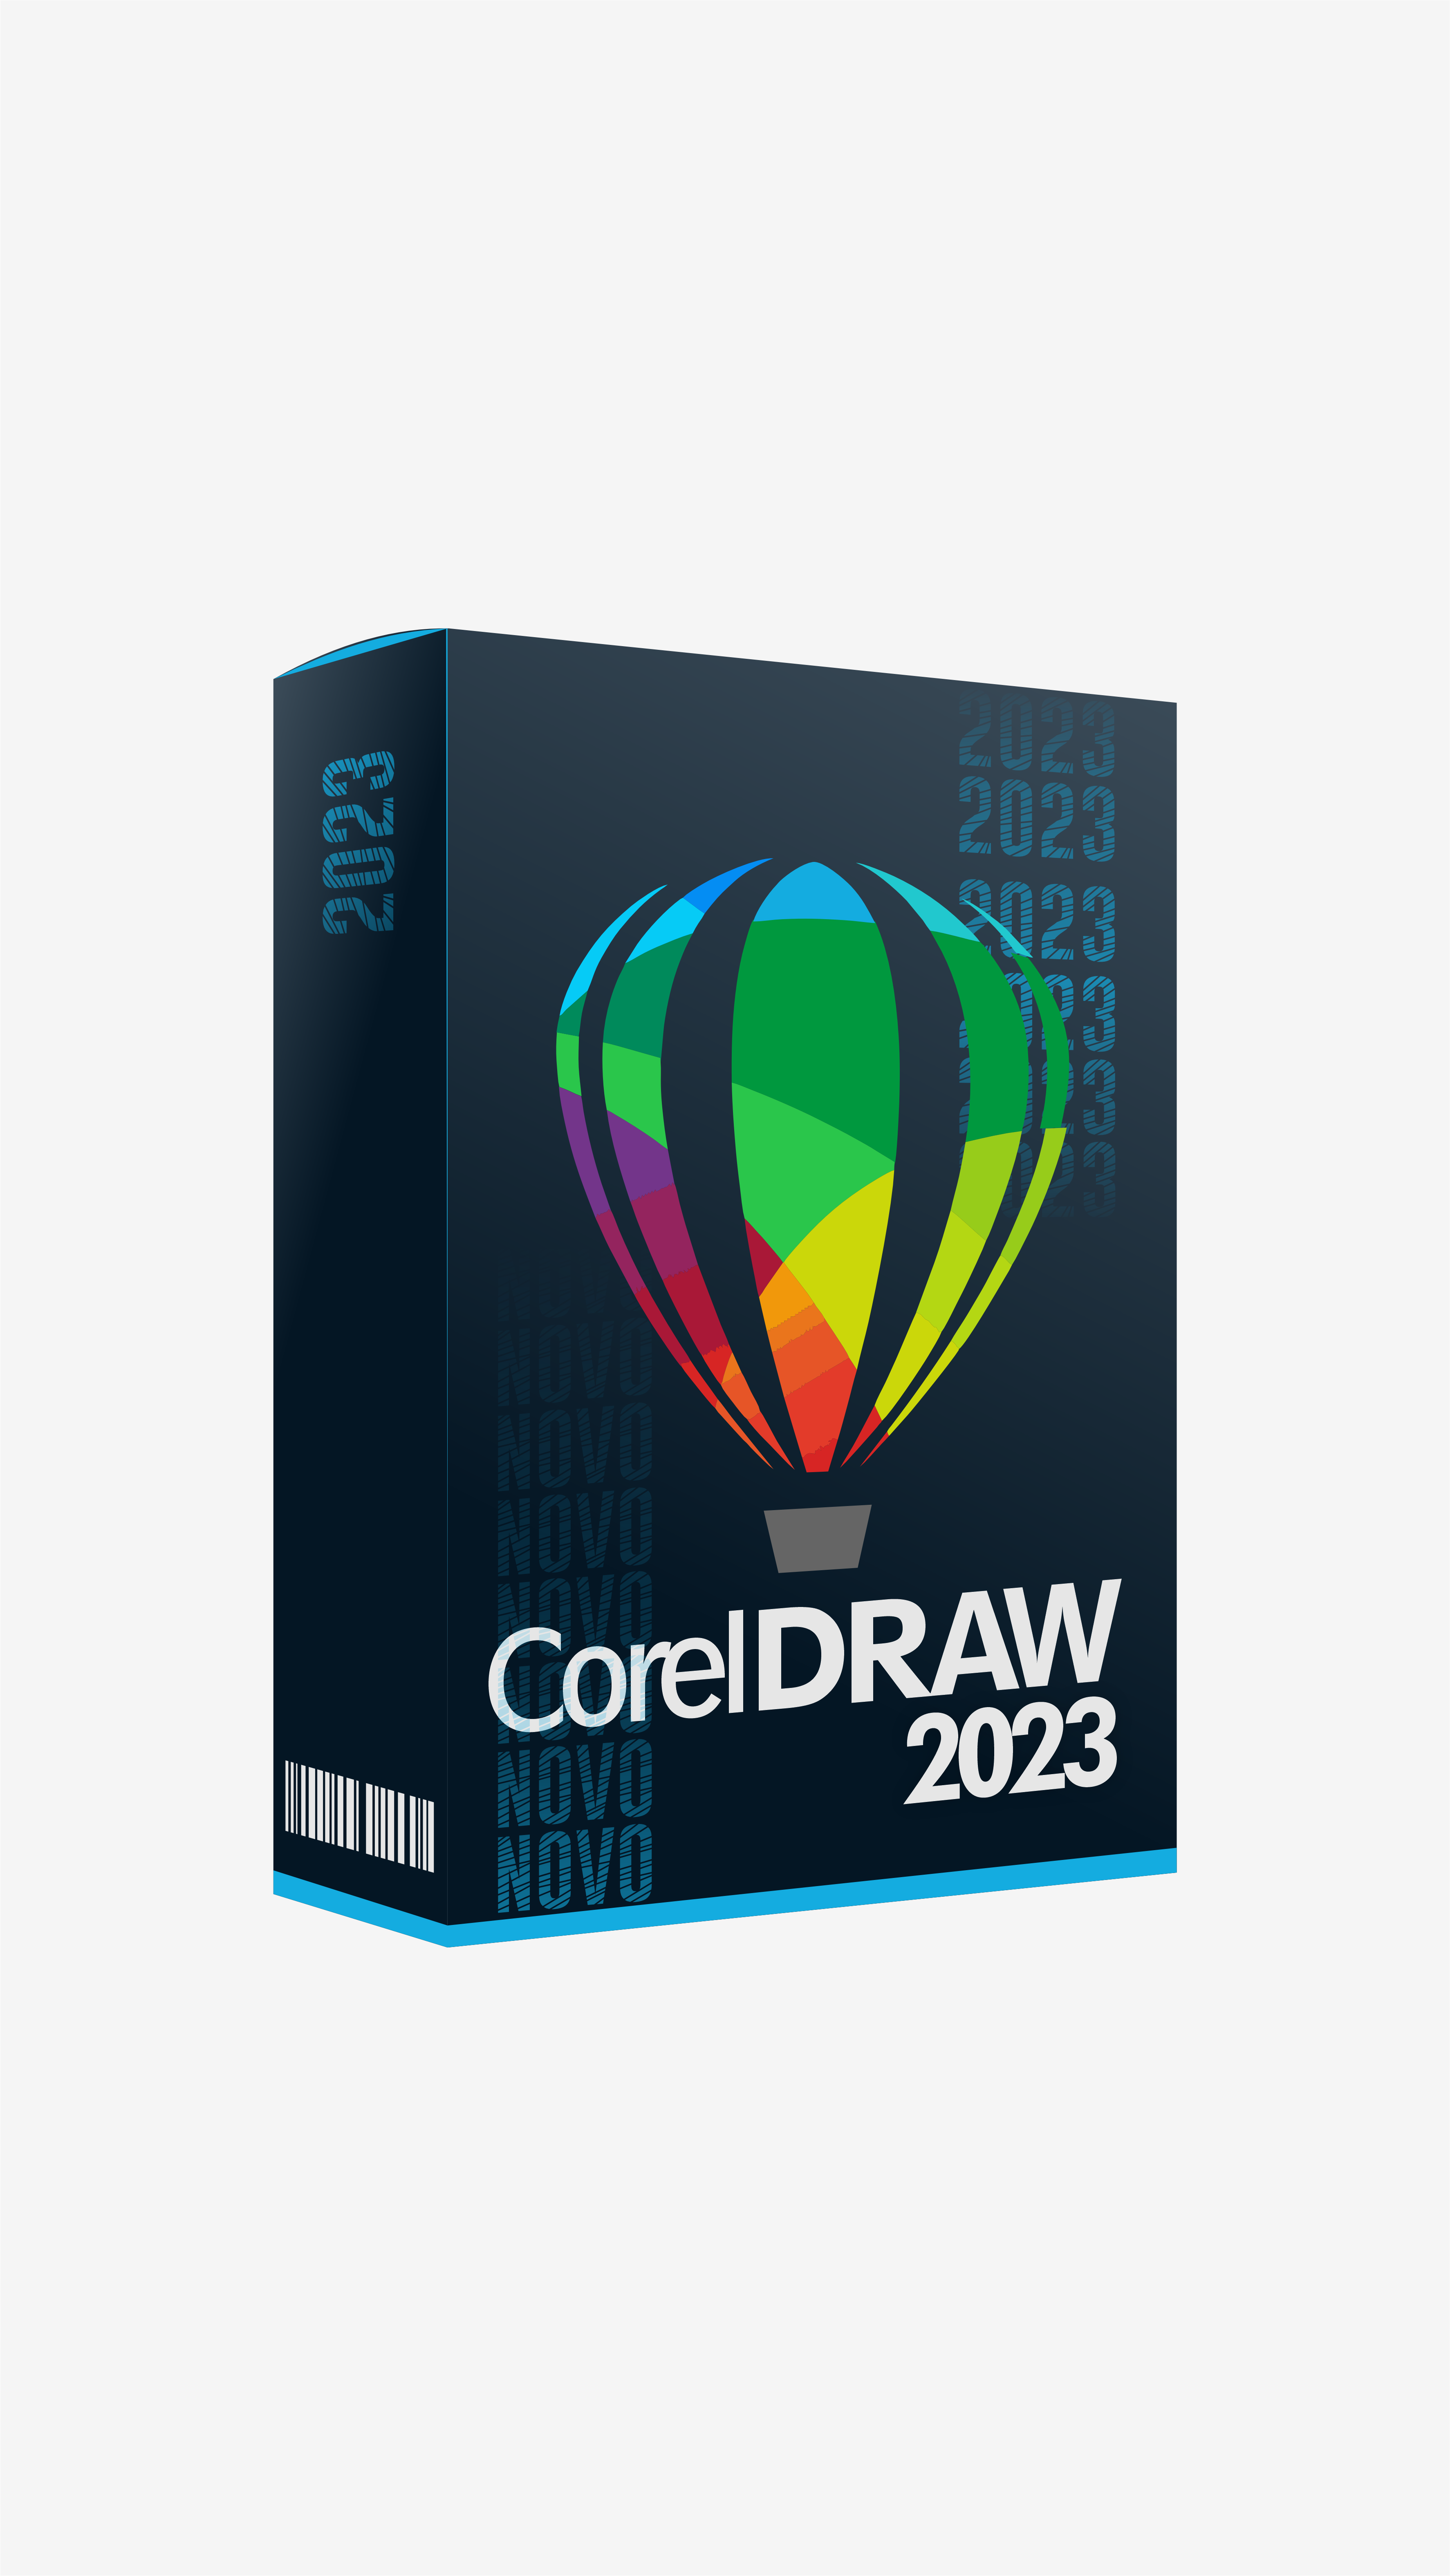 CorelDraw 2023 Licença Vitalícia Coreldraw 2023 Envio Automático!